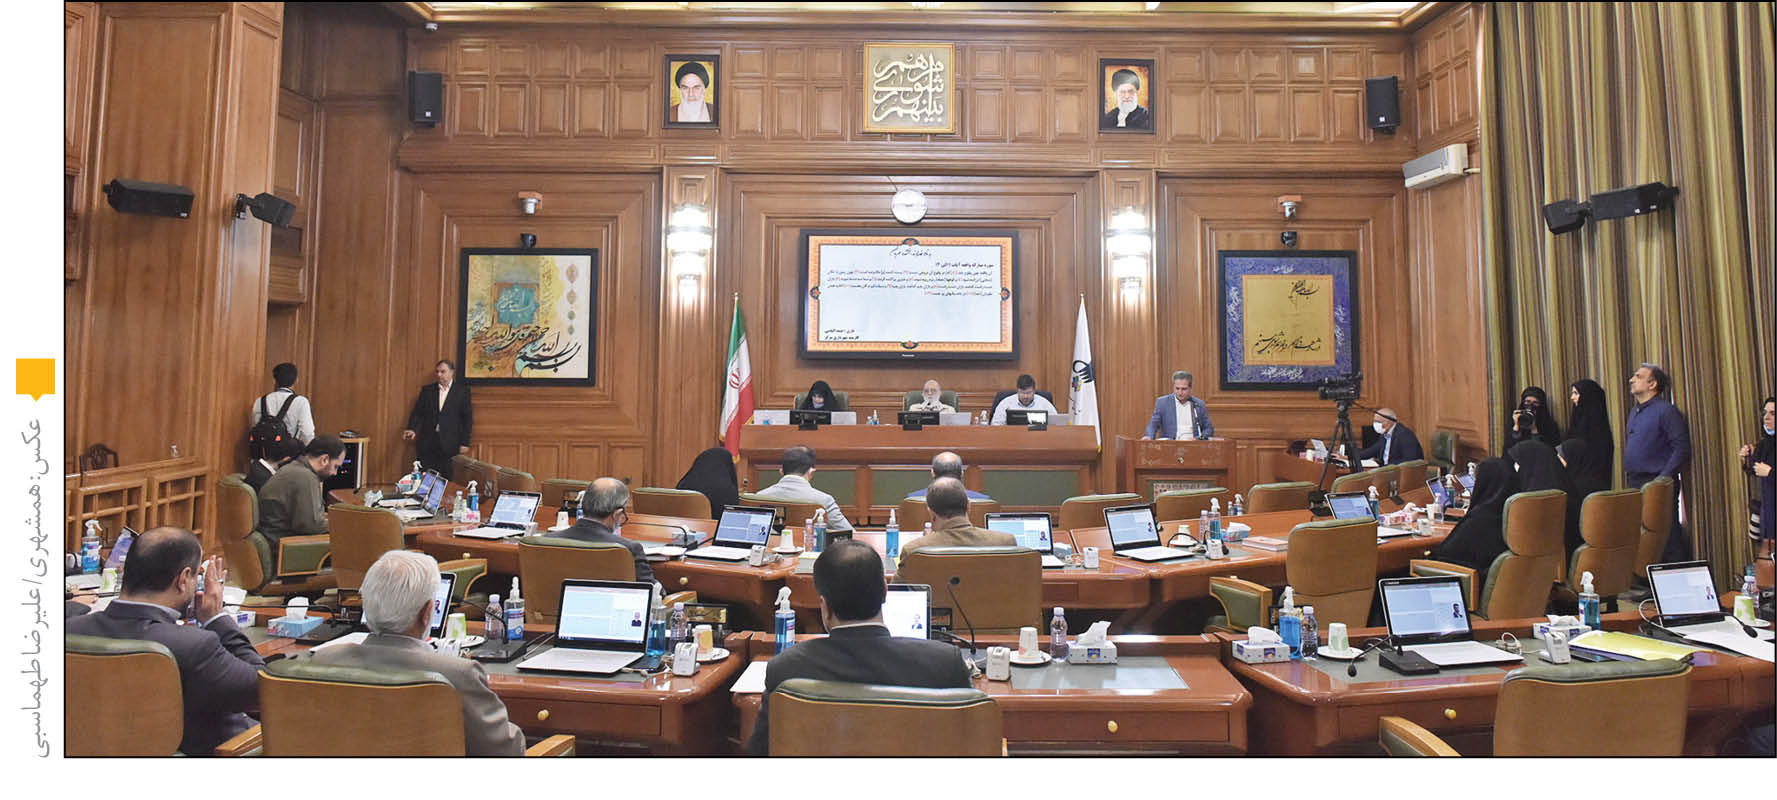 اعضای شورا و معاون مالی و اقتصاد شهری شهردار تهران در جلسه دیروز پارلمان شهری پایتخت تأکید کردند